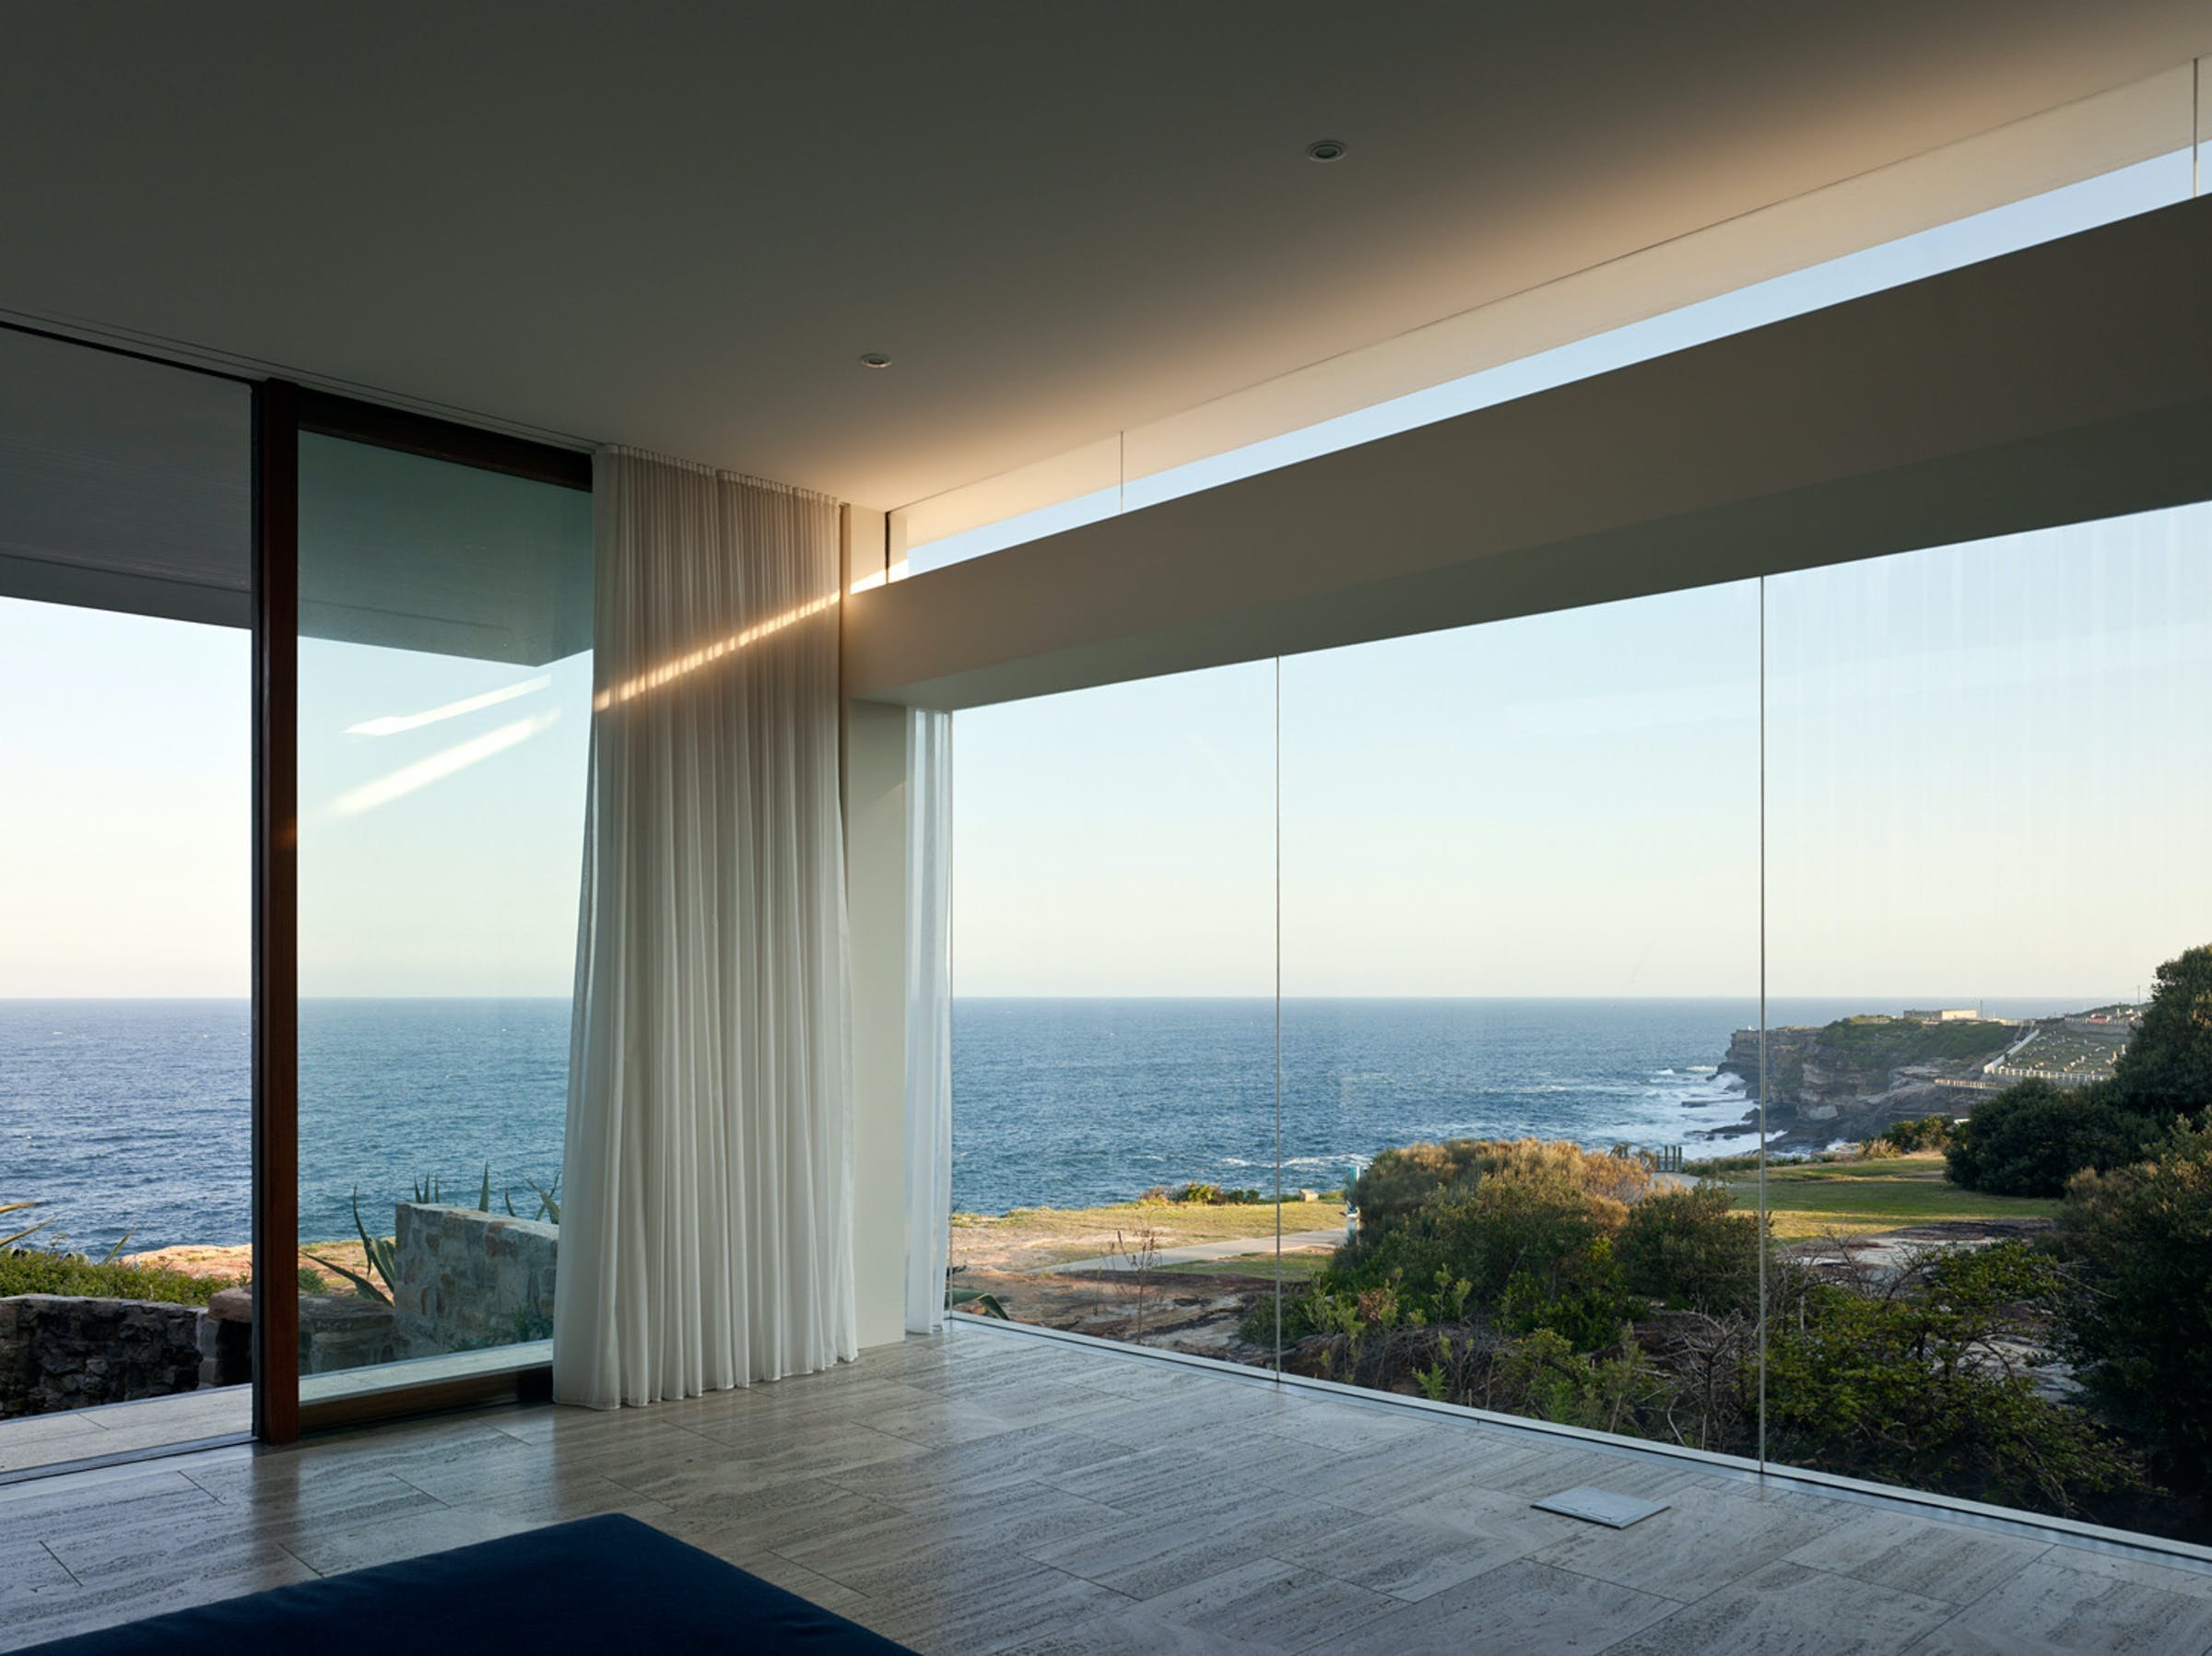 More fora. Панорамные окна. Окно с красивым видом. Панорамные окна с видом на море. Вилла с видом на океан.